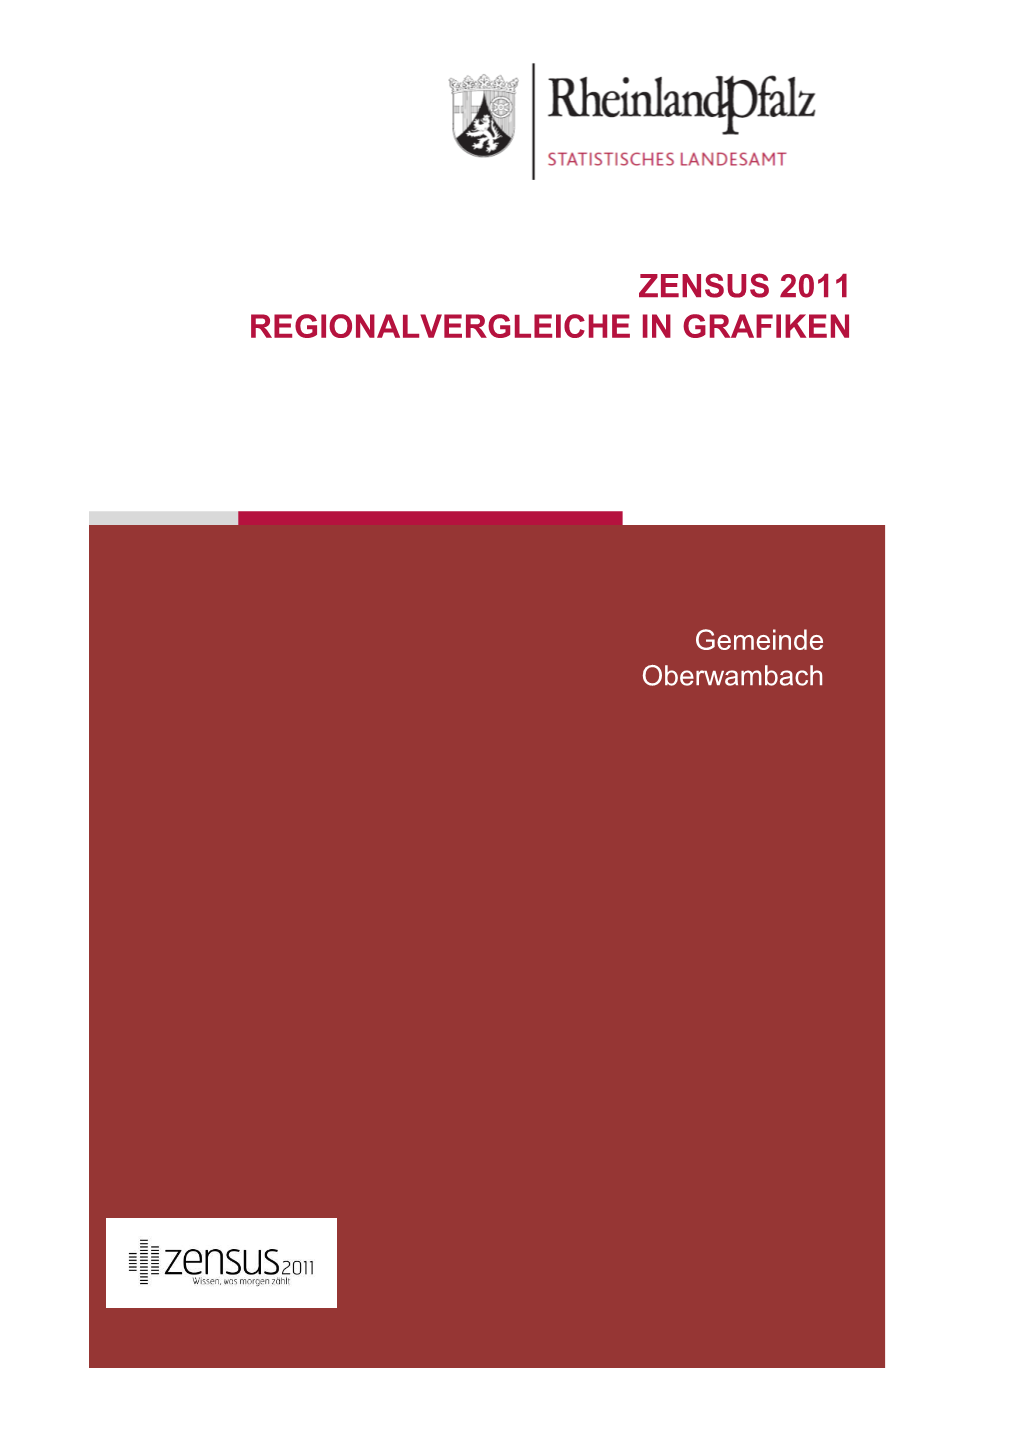 Regionalvergleiche in Grafiken Am 9. Mai 2011, Oberwambach